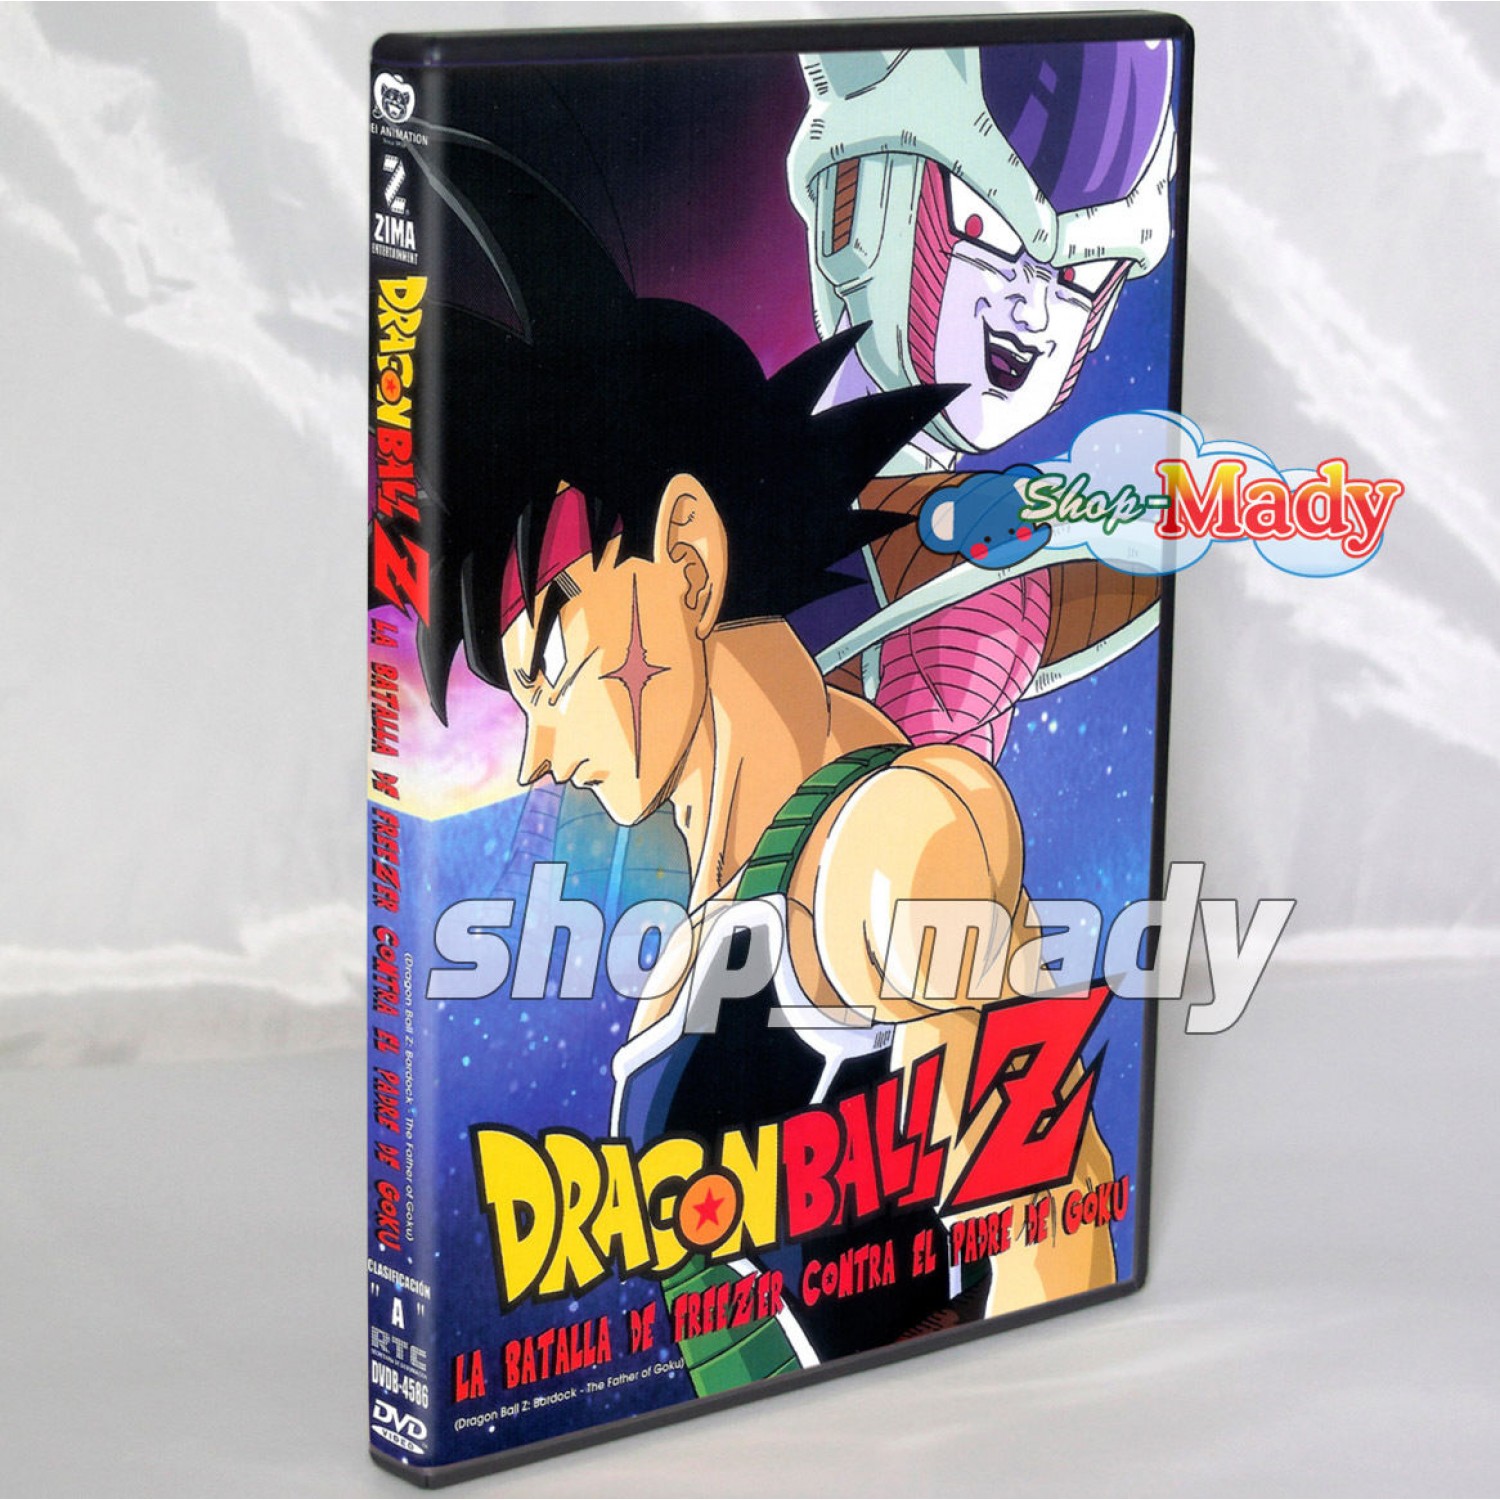 Dragon Ball Z La Batalla de Freezer contra el Padre de Goku DVD